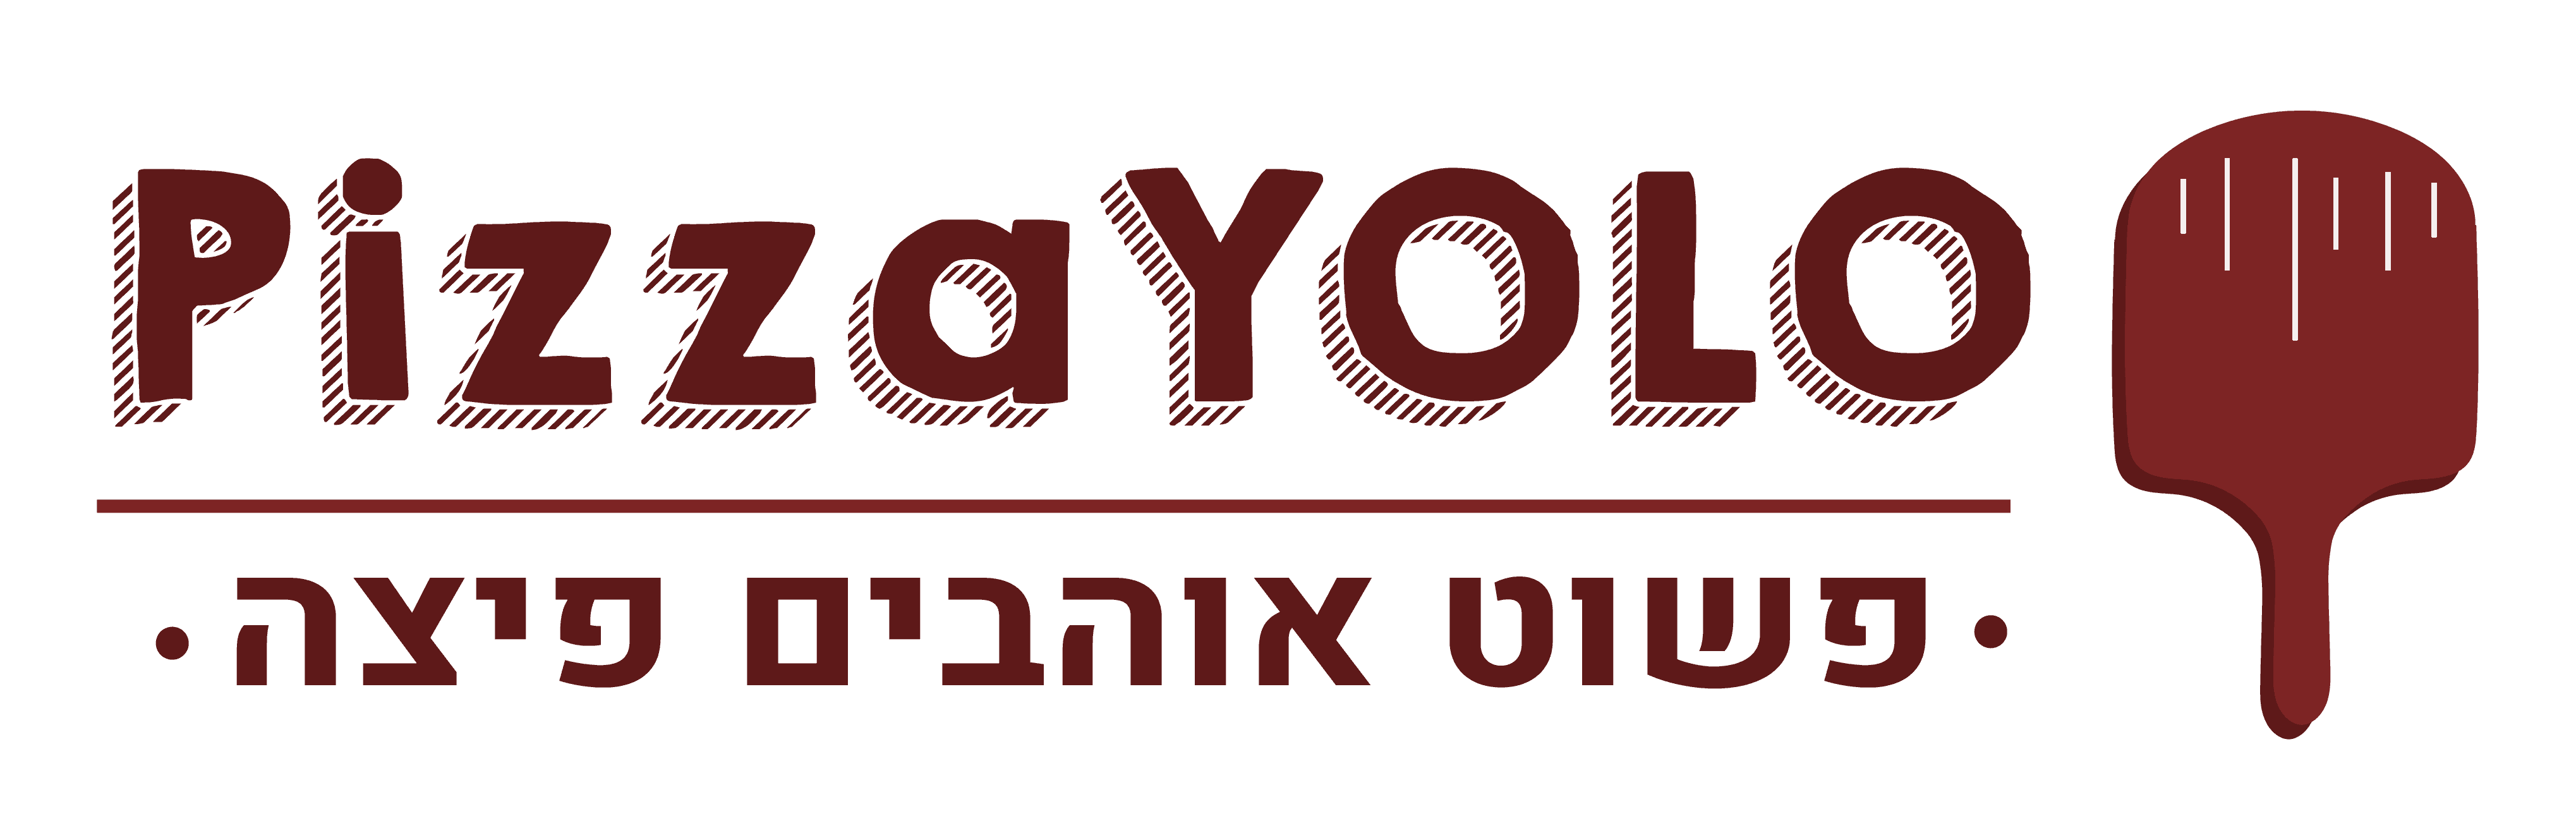 לוגו PizzaYOLO טאבונים ביתיים ומה שבניהם